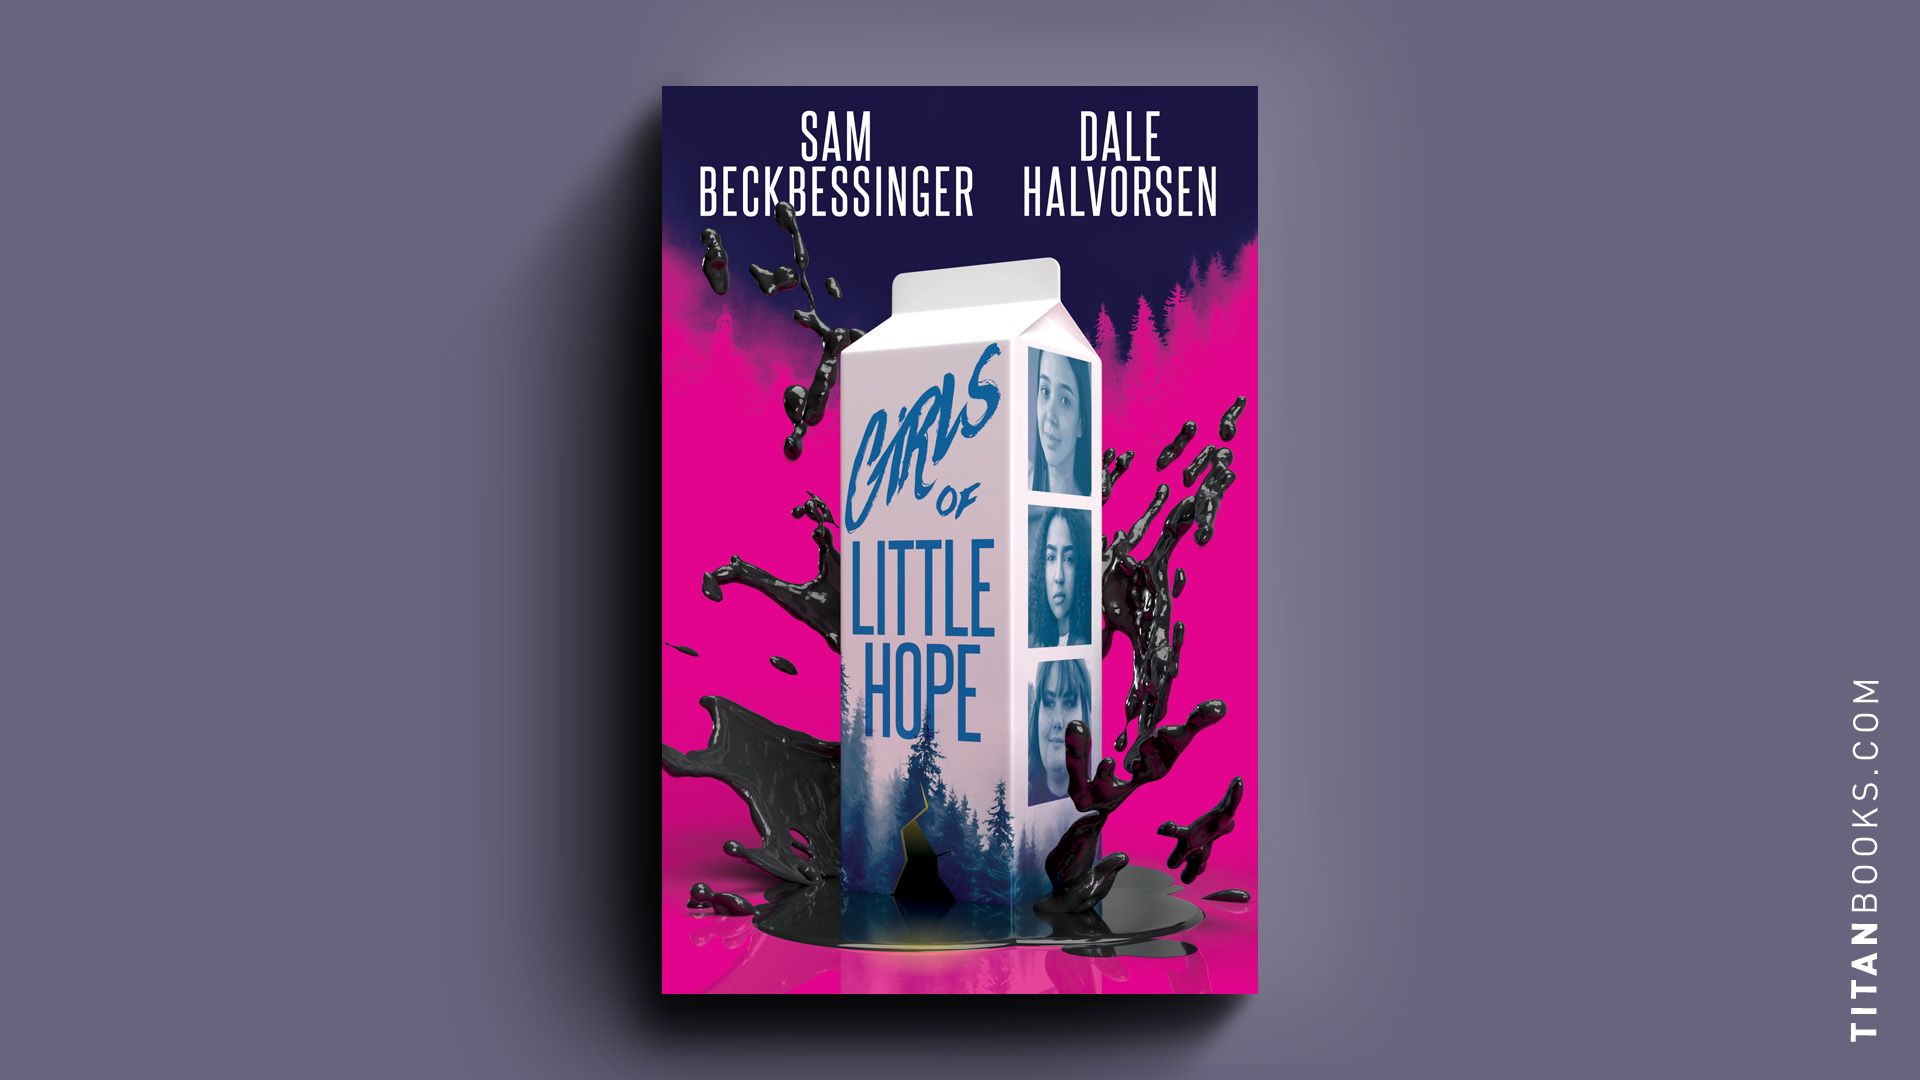 Girls of Little Hope - Sam Beckbessinger and Dale Halvorsen